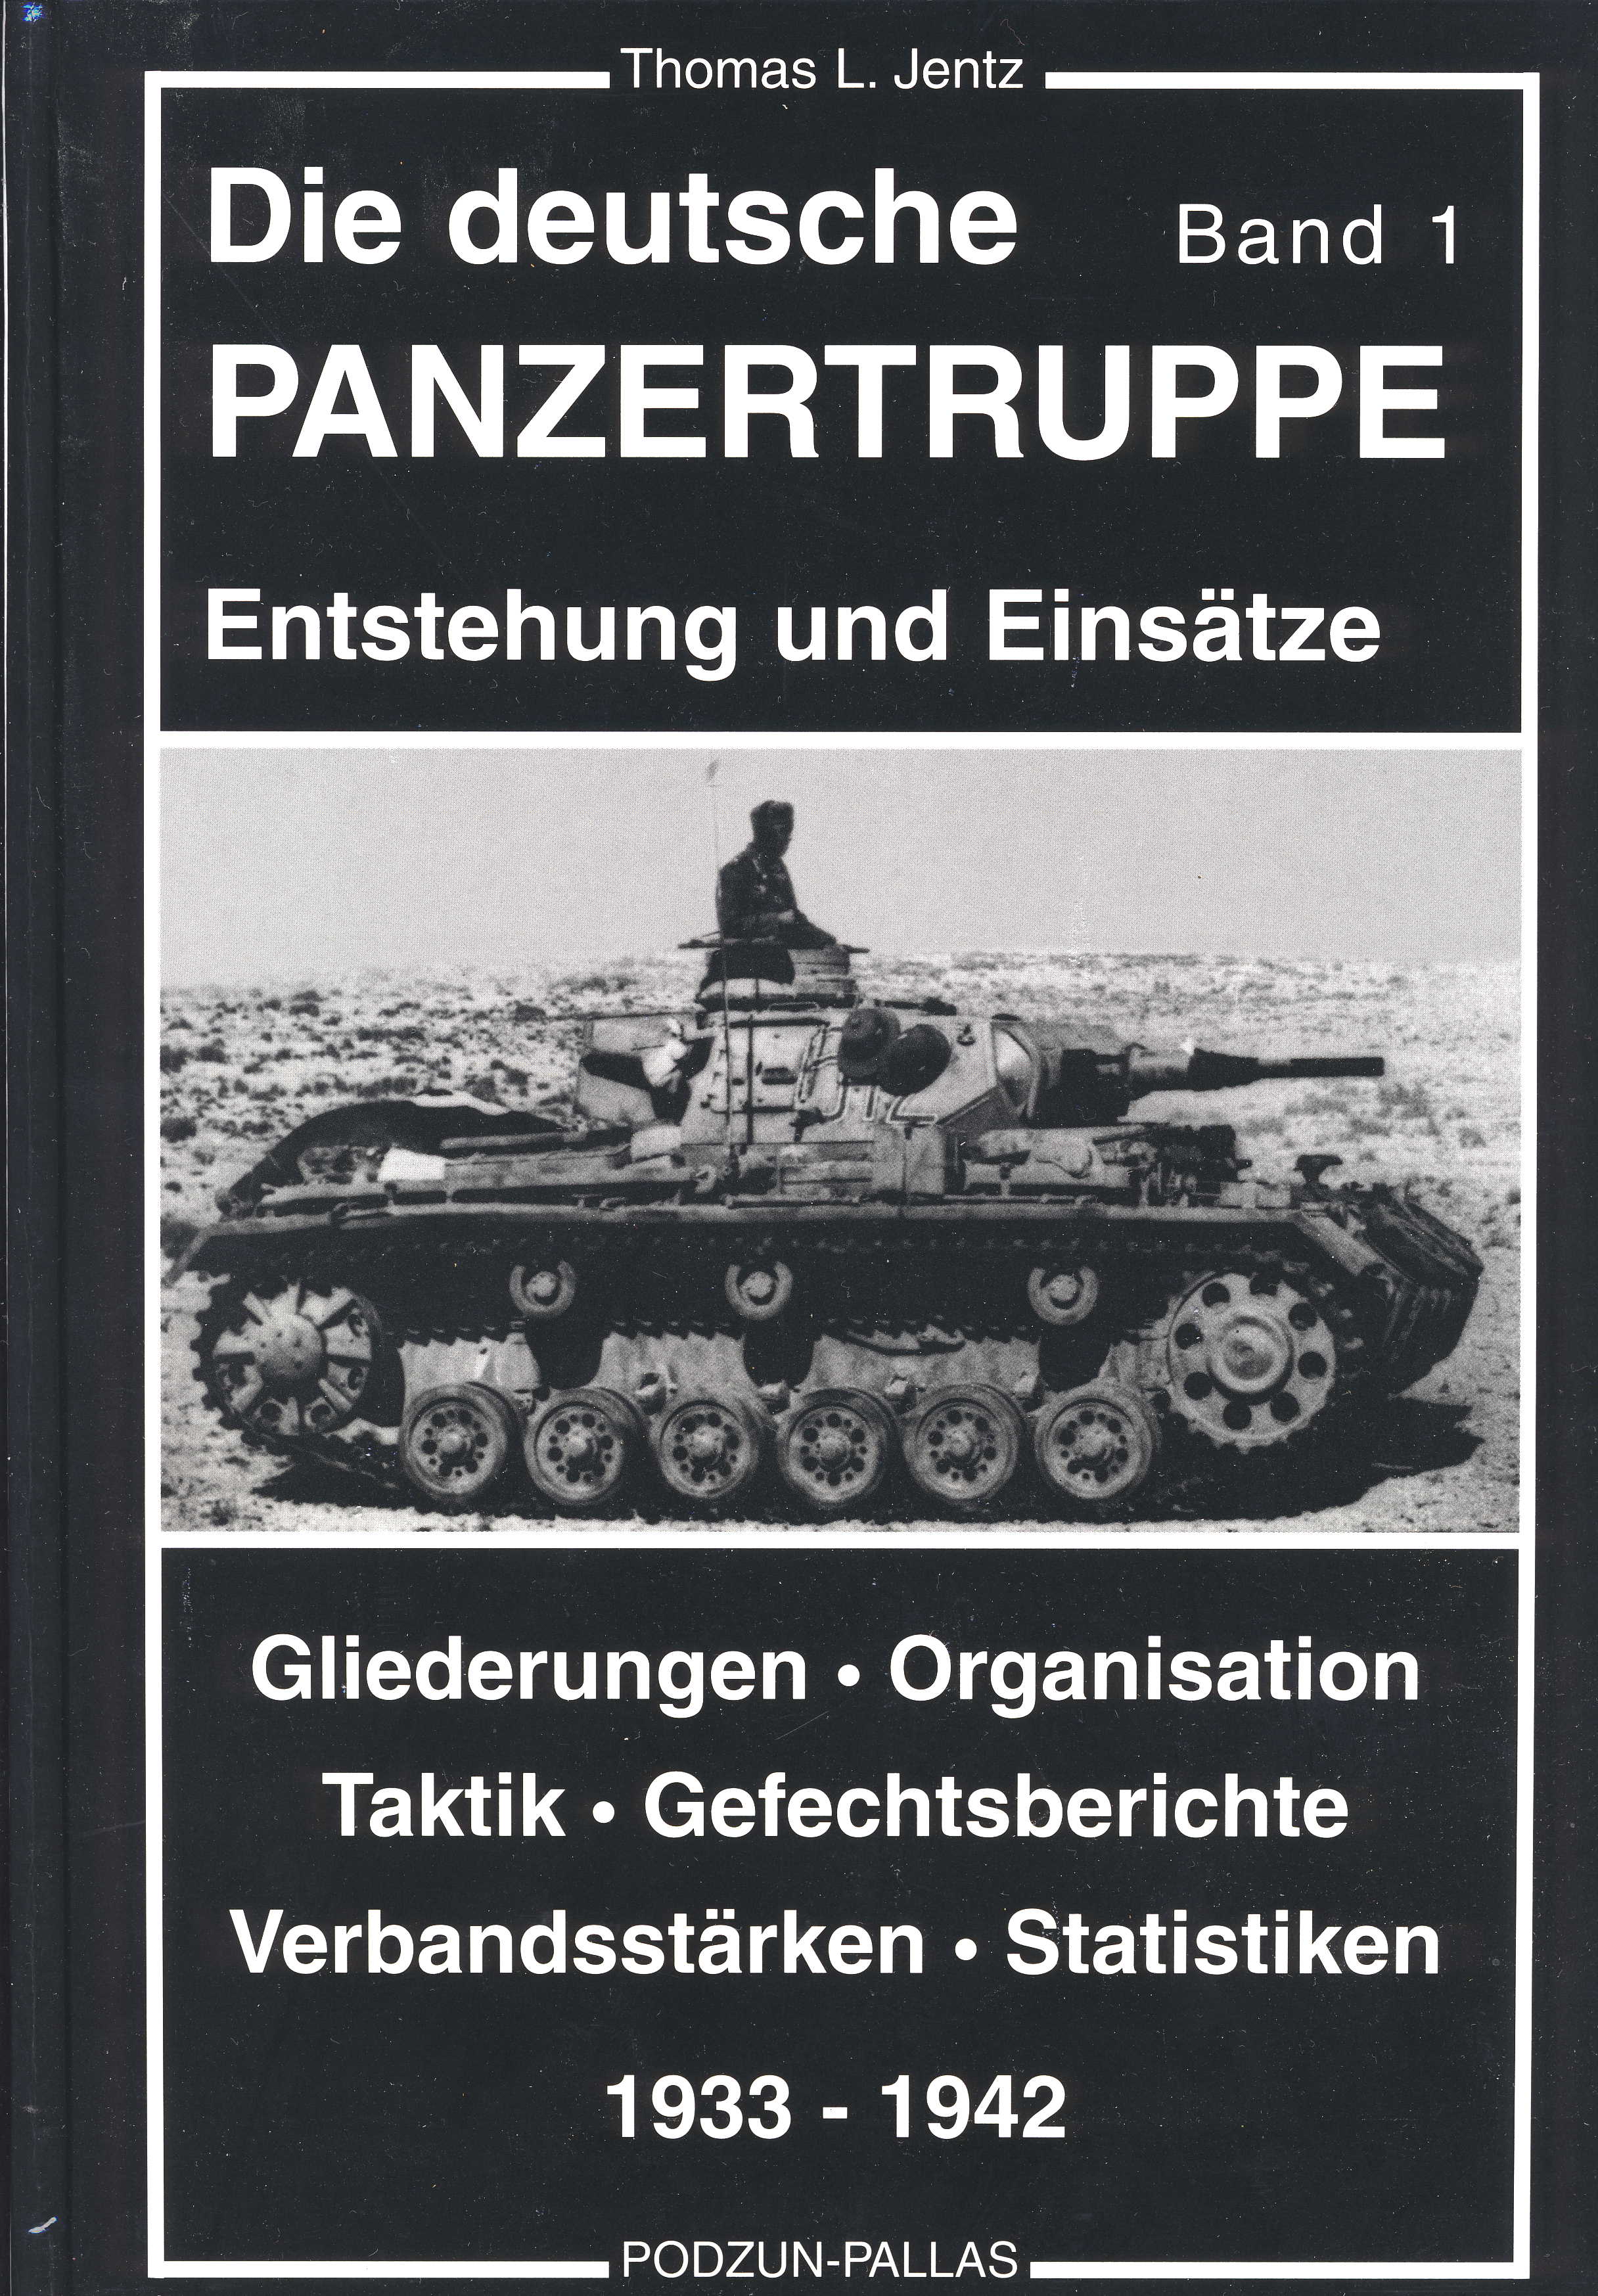 Jentz, Thomas L. Die deutsche Panzertruppe Band 1 Entstehung und